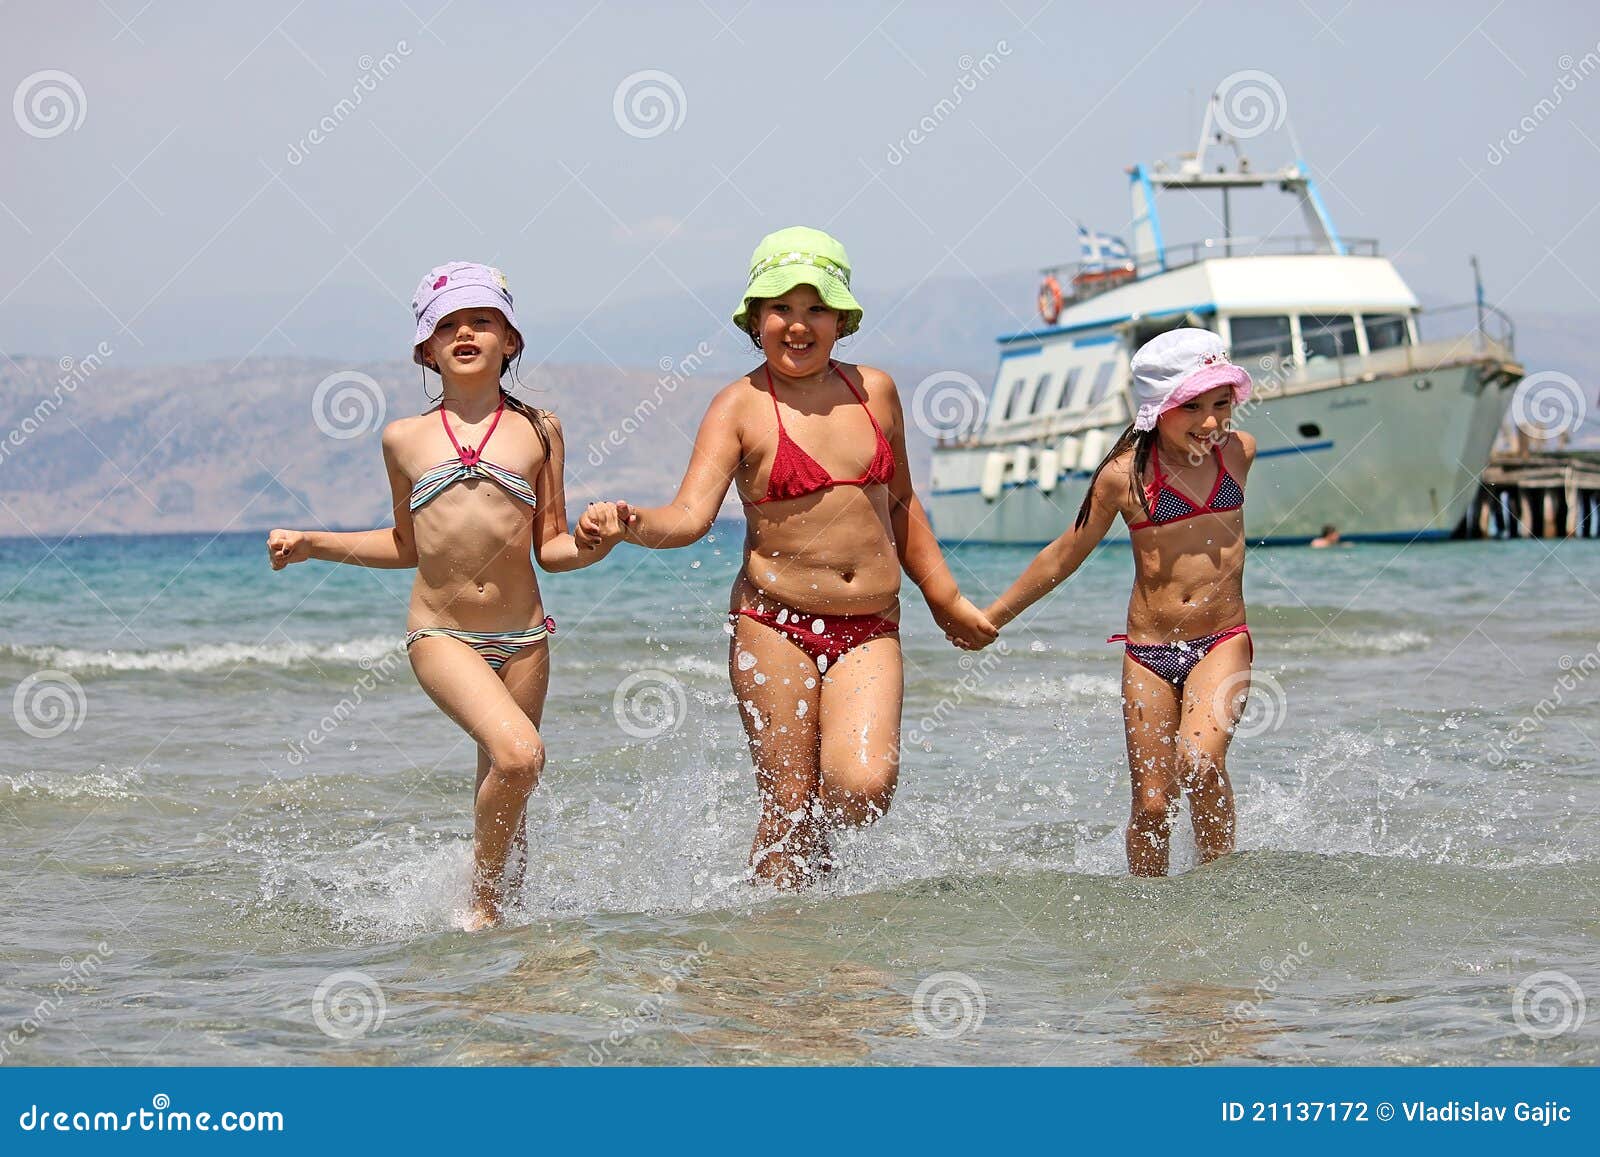 нудиский пляж с голыми детьми фото 11